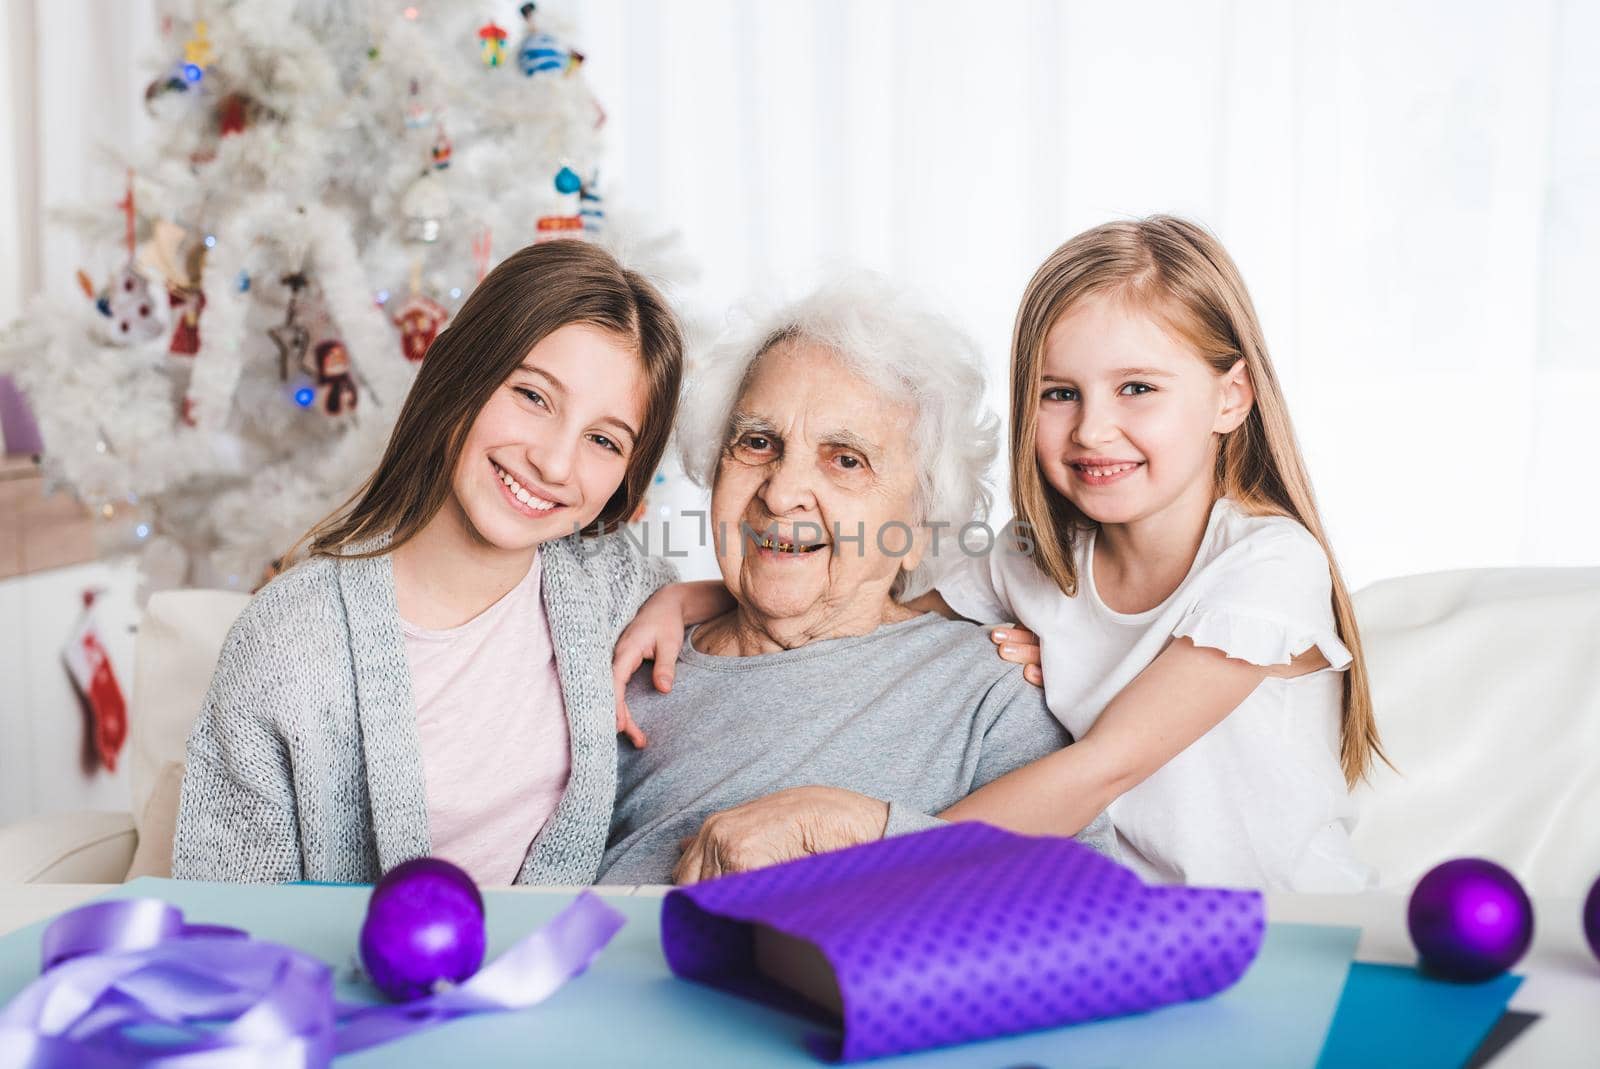 Granddaughters with grandma sitting together by GekaSkr